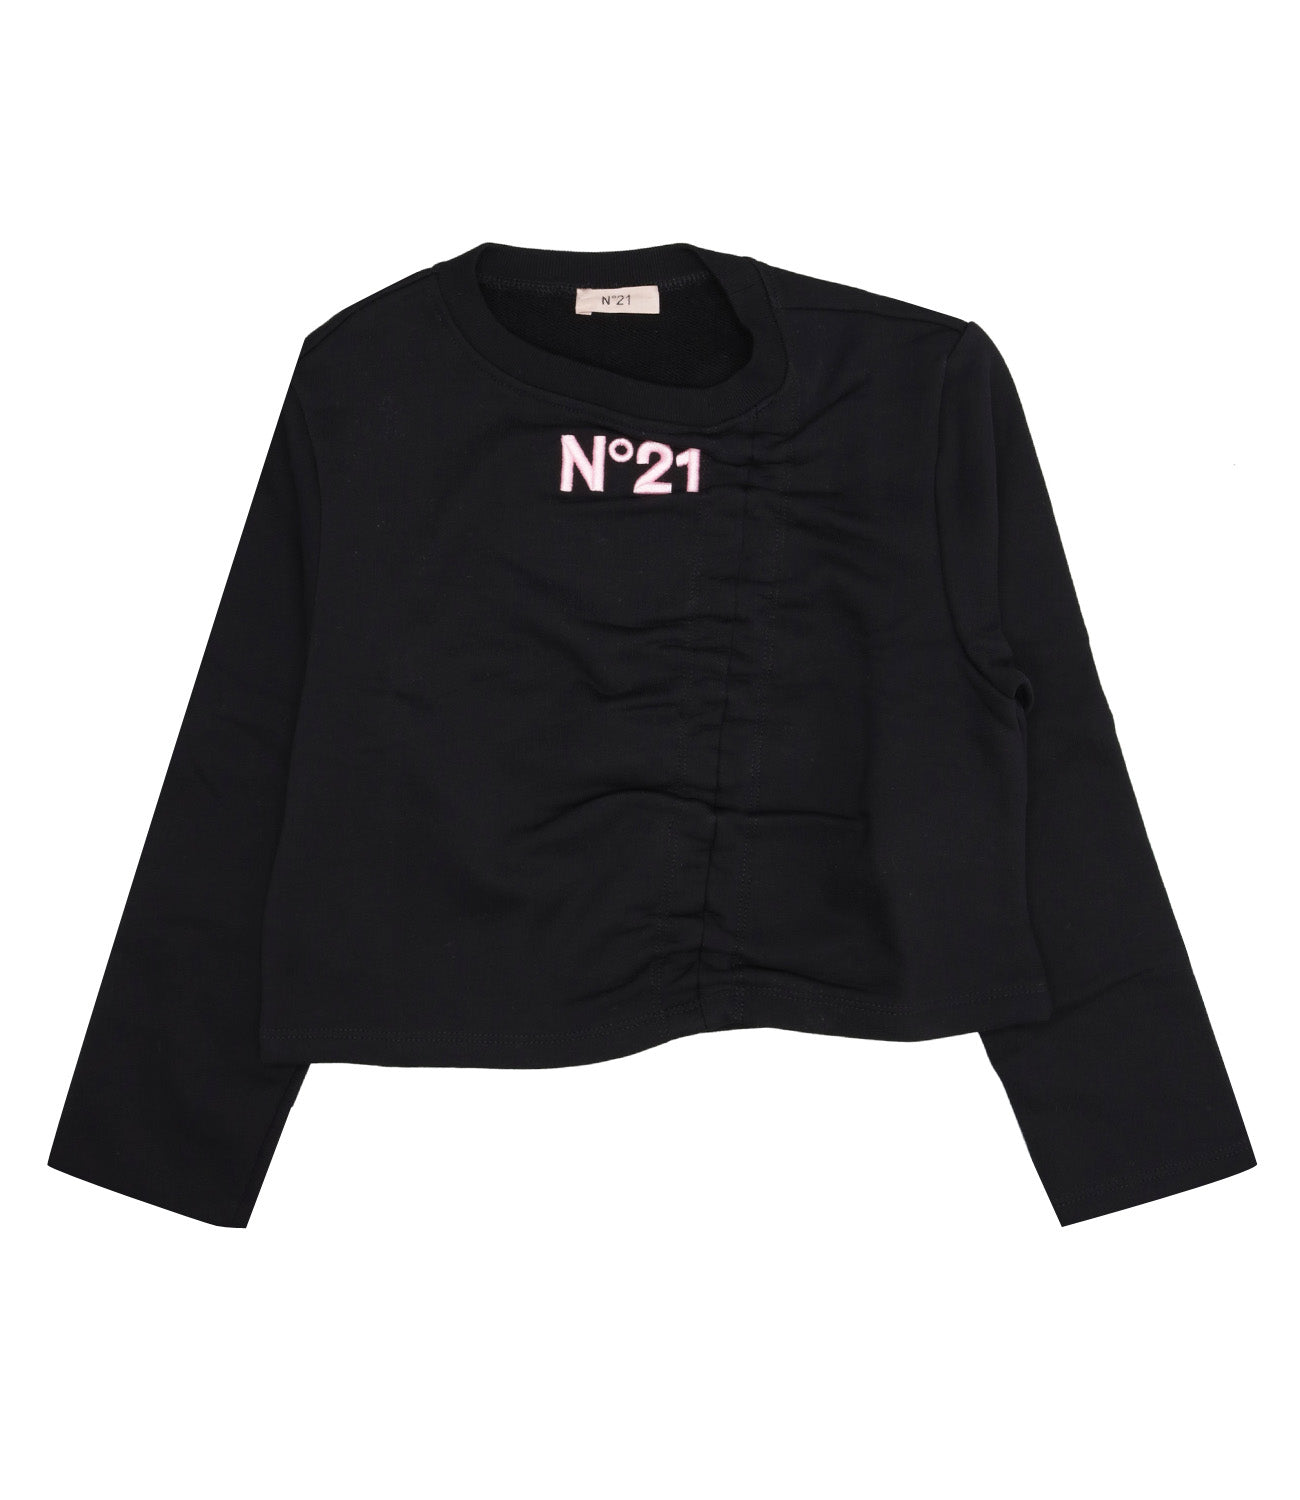 N 21 | Black Sweatshirt